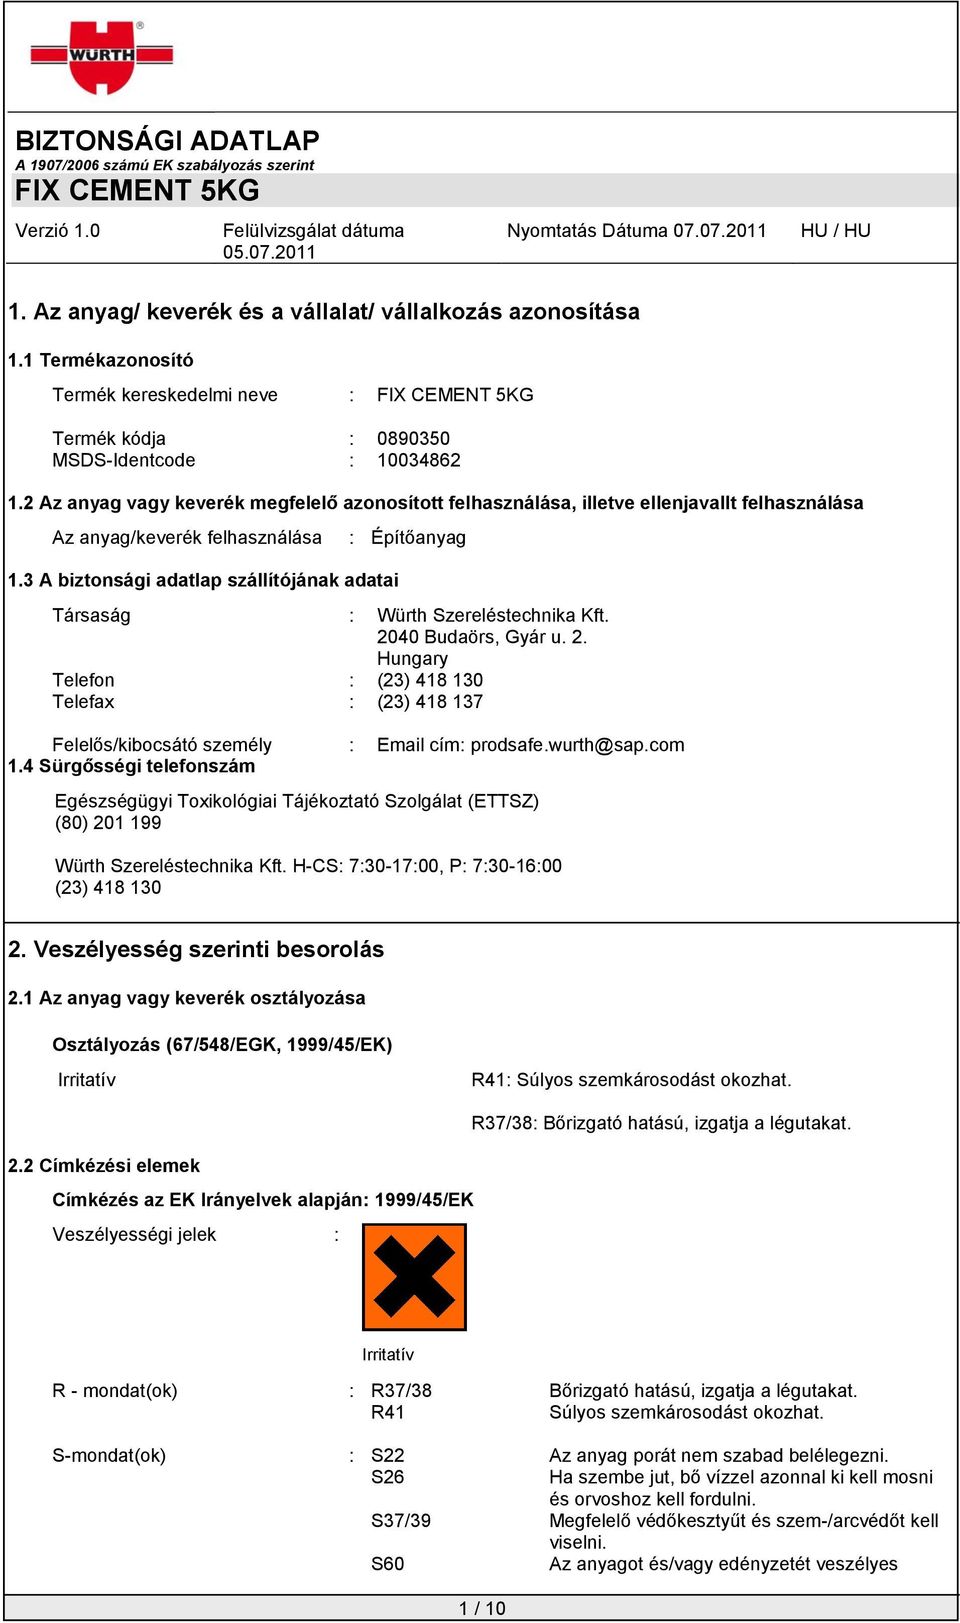 3 A biztonsági adatlap szállítójának adatai : Építőanyag Társaság : Würth Szereléstechnika Kft. 20